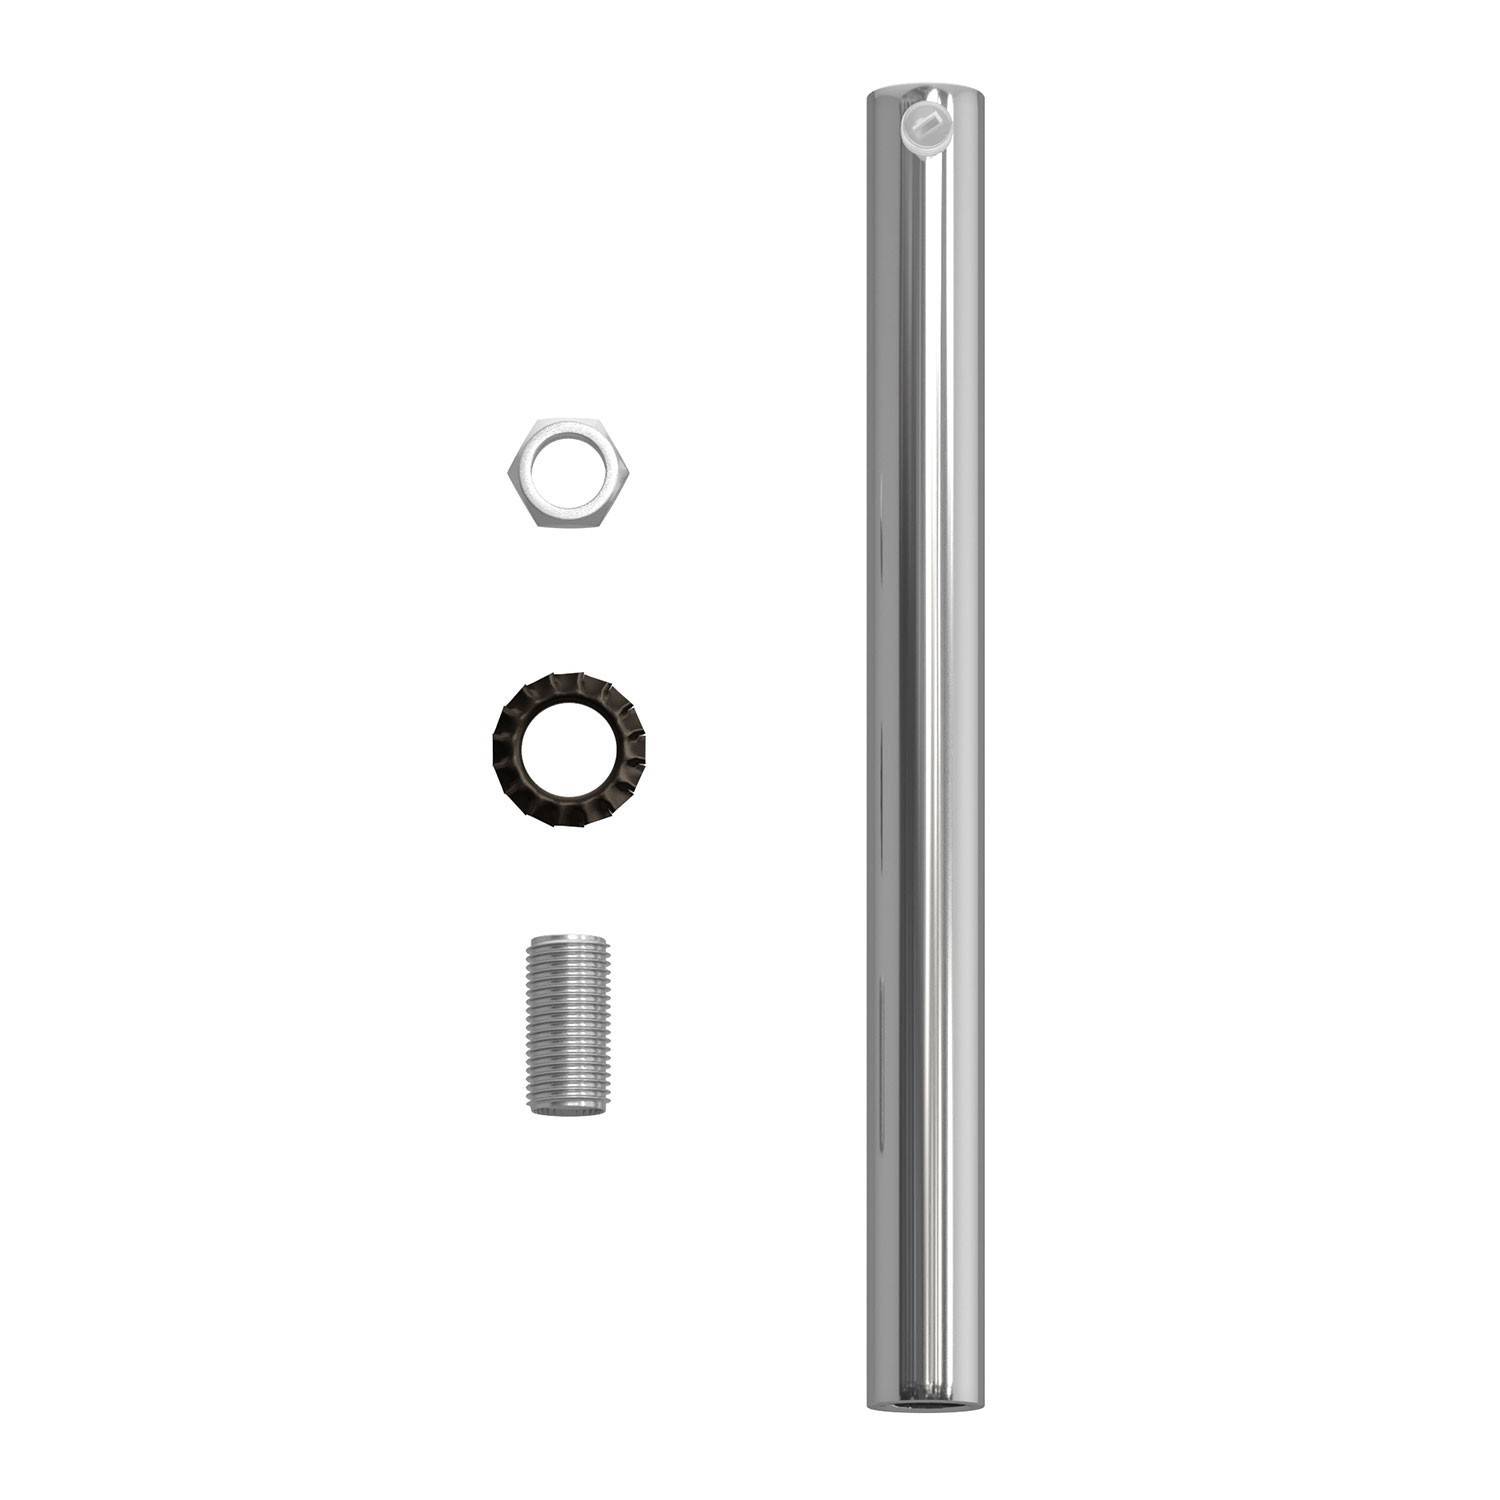 Cylindryczny metalowy zacisk kablowy, długość 15 cm, w komplecie z prętem, nakrętką i podkładką